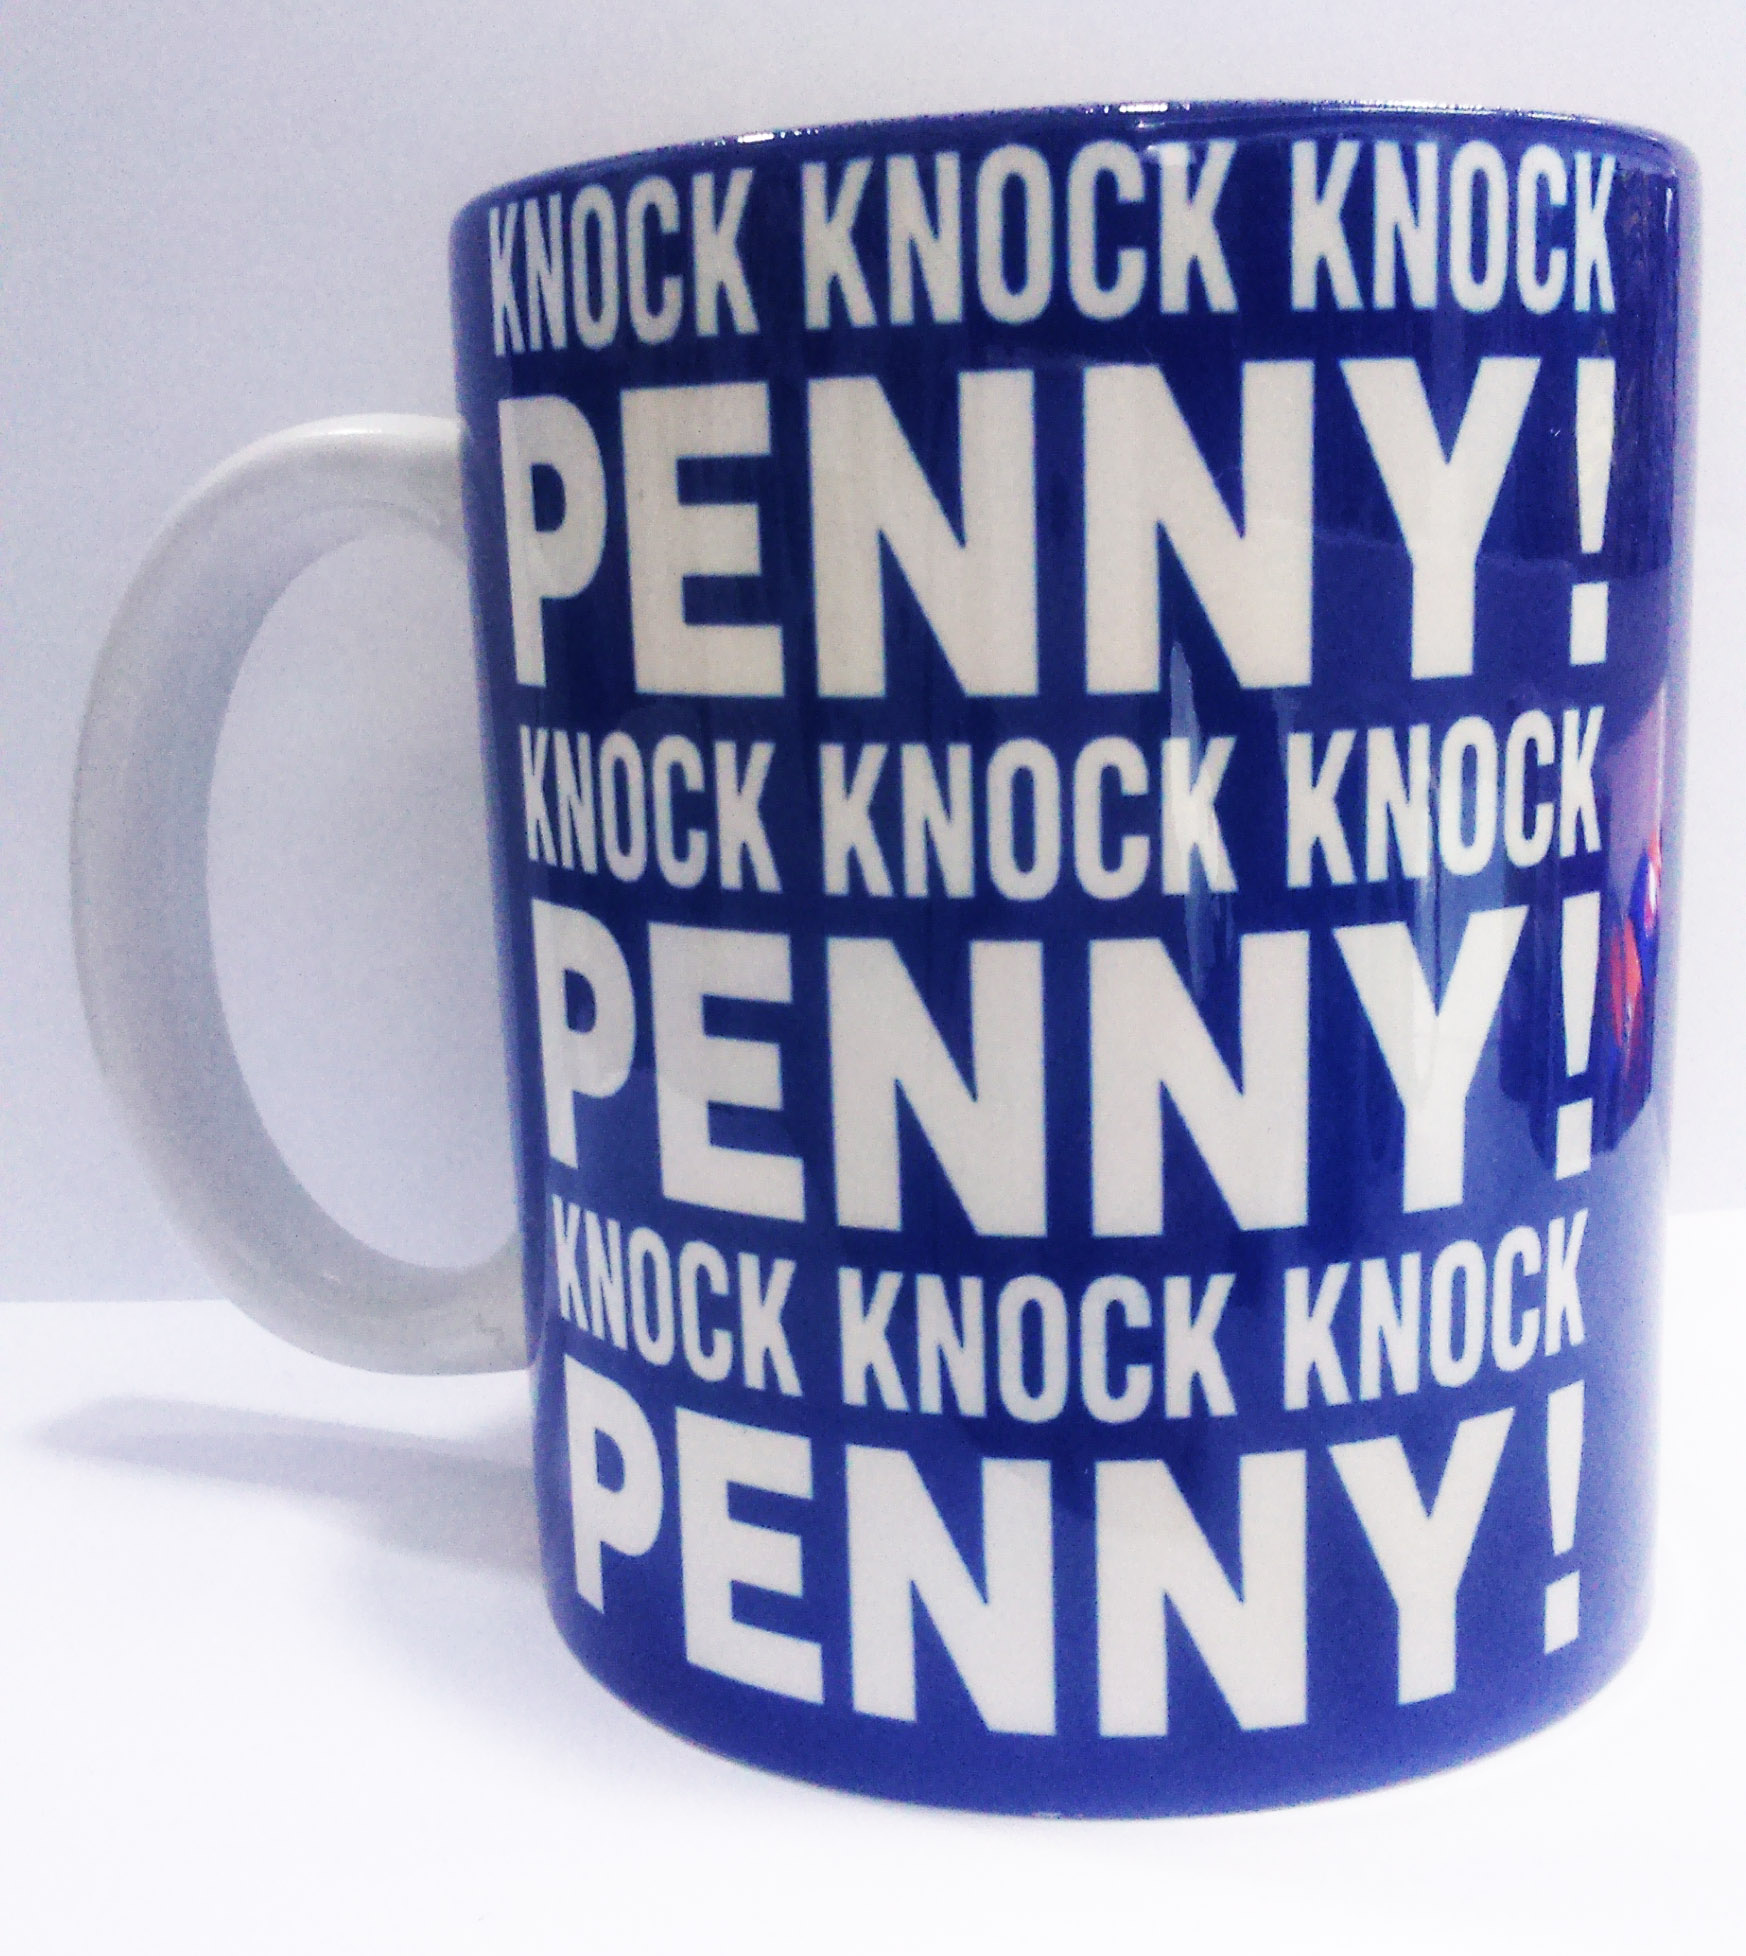 Knock, knock, knock Penny